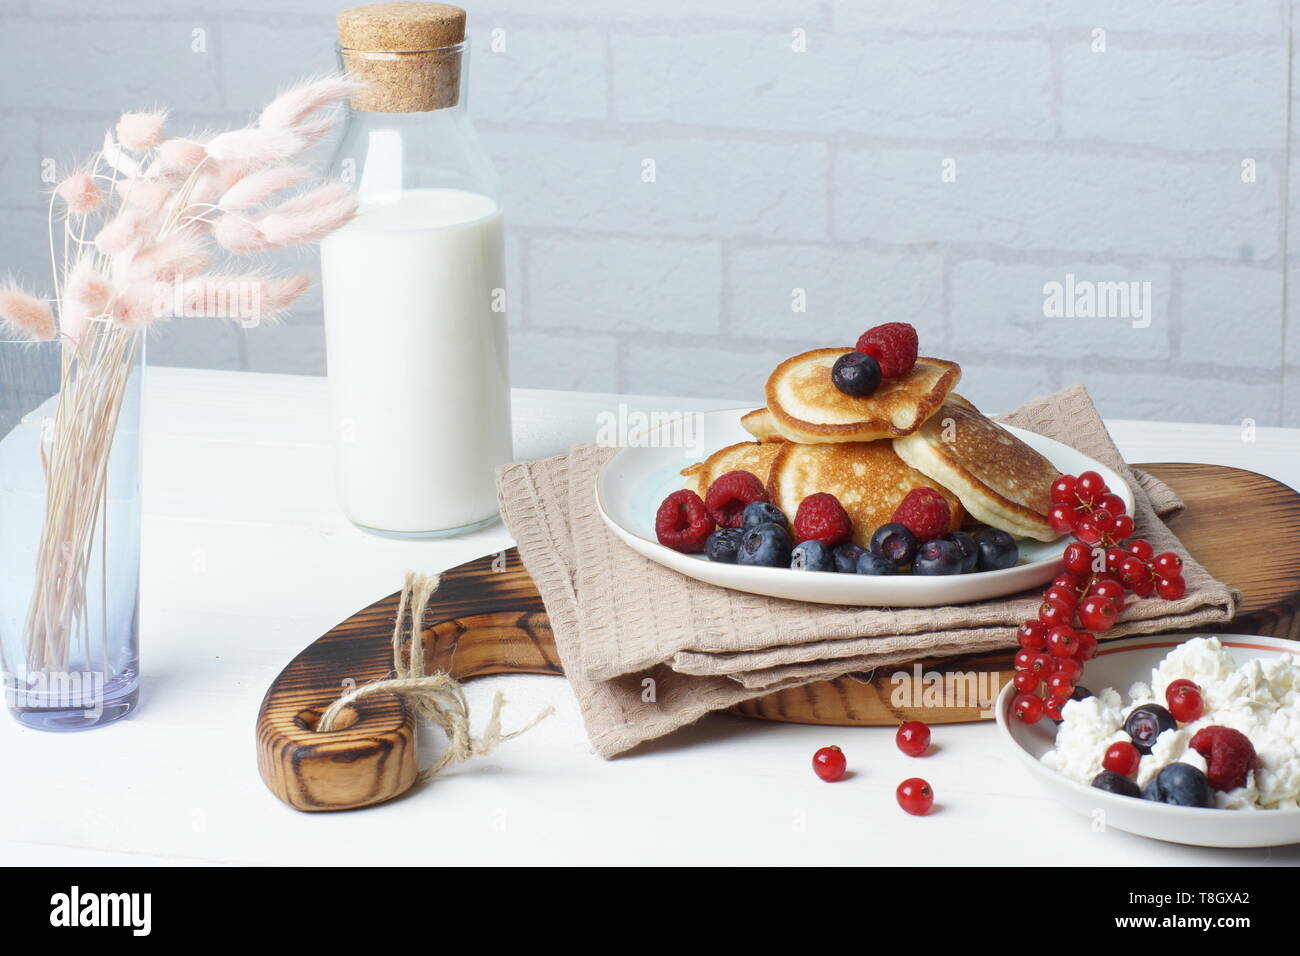 La colazione su un tavolo bianco, frittelle con frutti di bosco freschi, formaggio e una bottiglia di latte Foto Stock